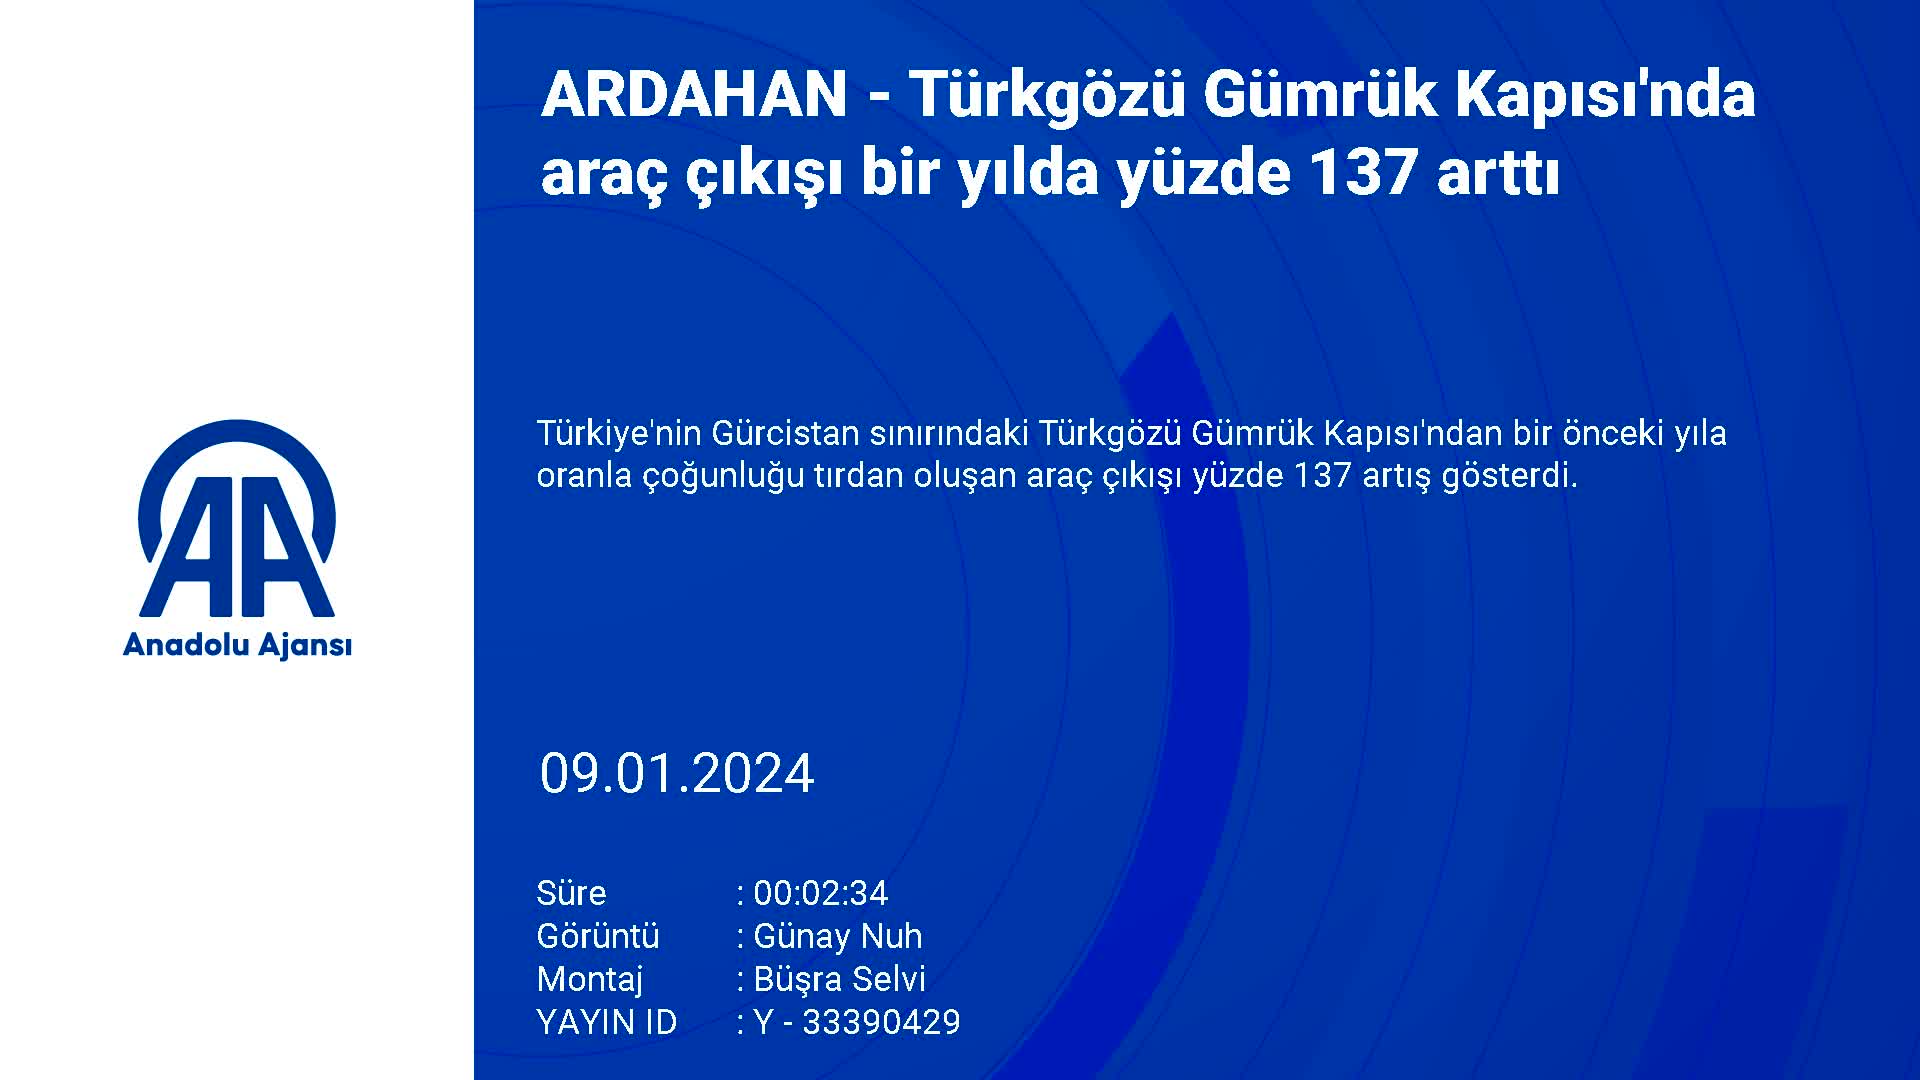 Türkgözü Gümrük Kapısı’nda araç çıkışı bir yılda yüzde 137 arttı